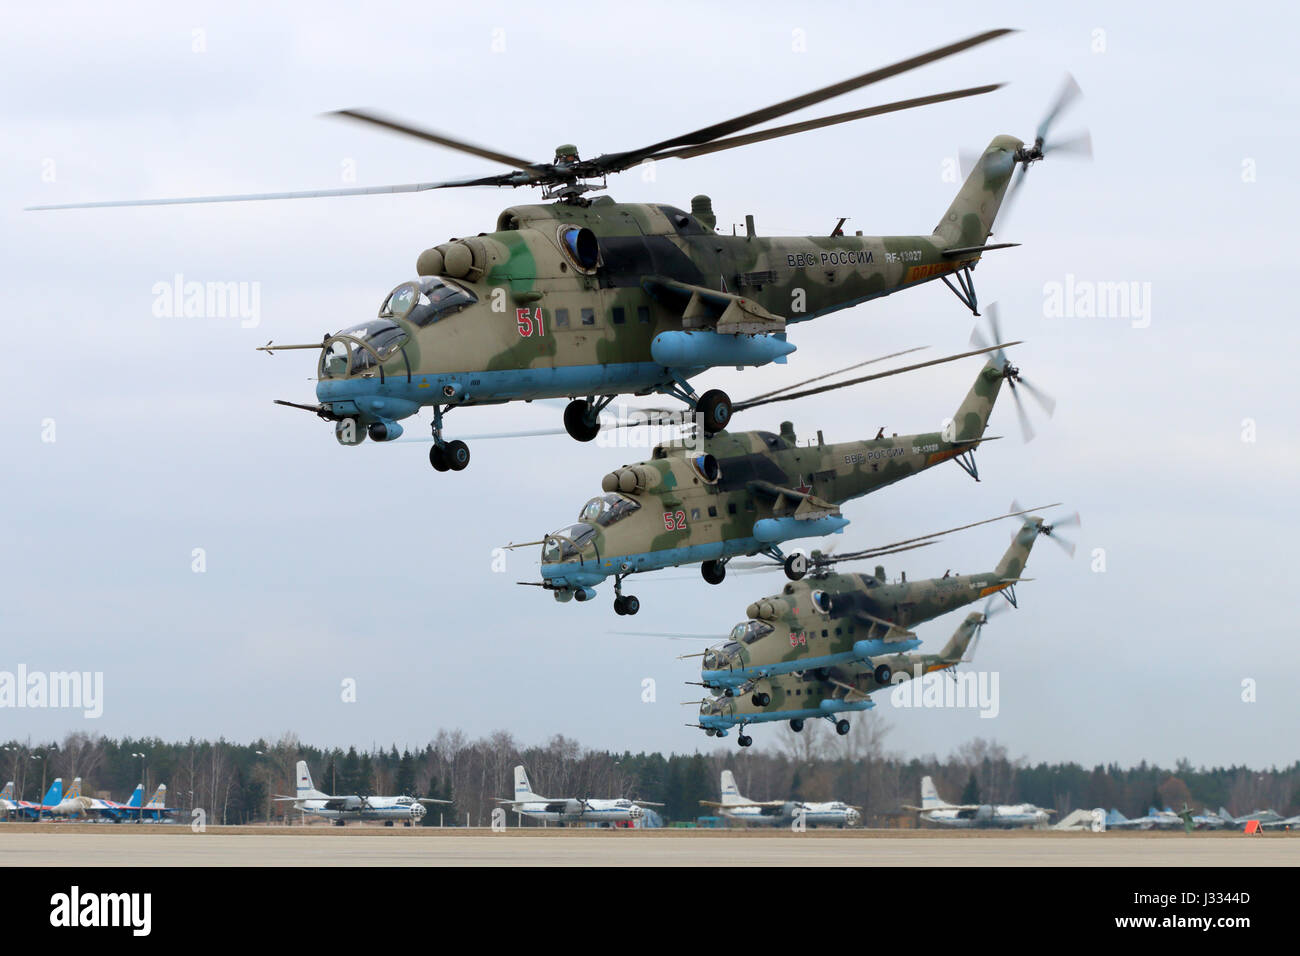 KUBINKA, MOSCOW REGION, Russland - 10. April 2017: Mil Mi - 35 M RF-13027 Kampfhubschrauber der russischen Luftwaffe während der Victory Day Parade Proben bei Ku Stockfoto